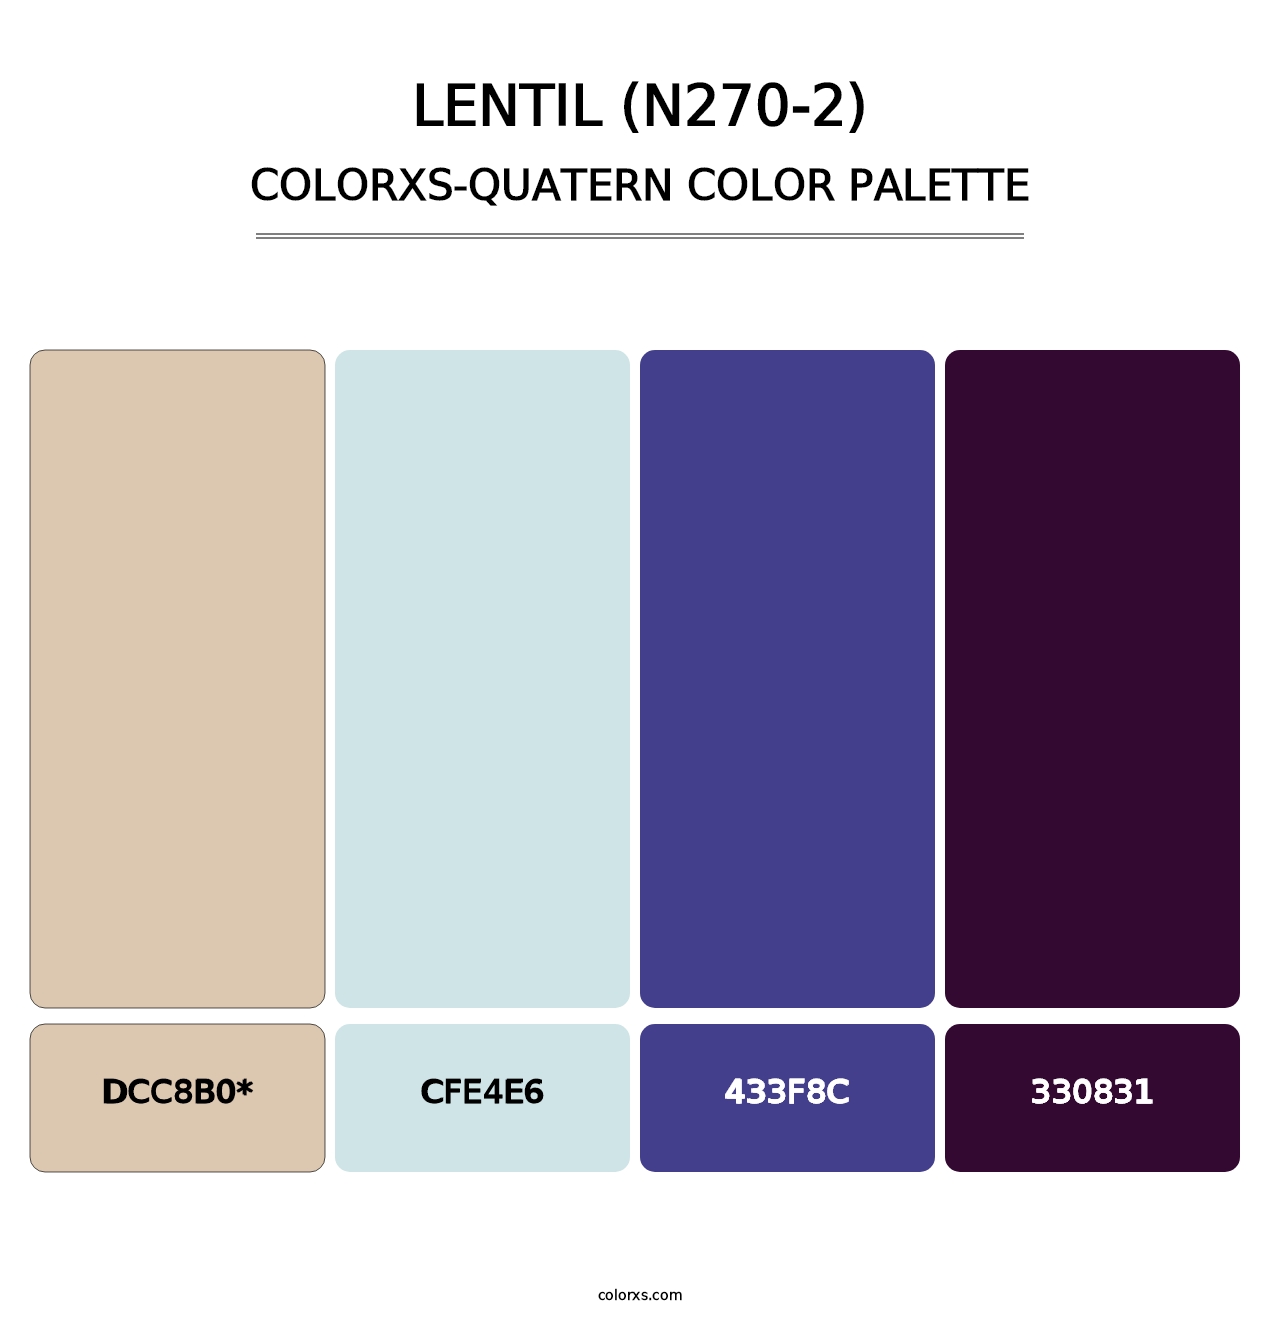 Lentil (N270-2) - Colorxs Quatern Palette